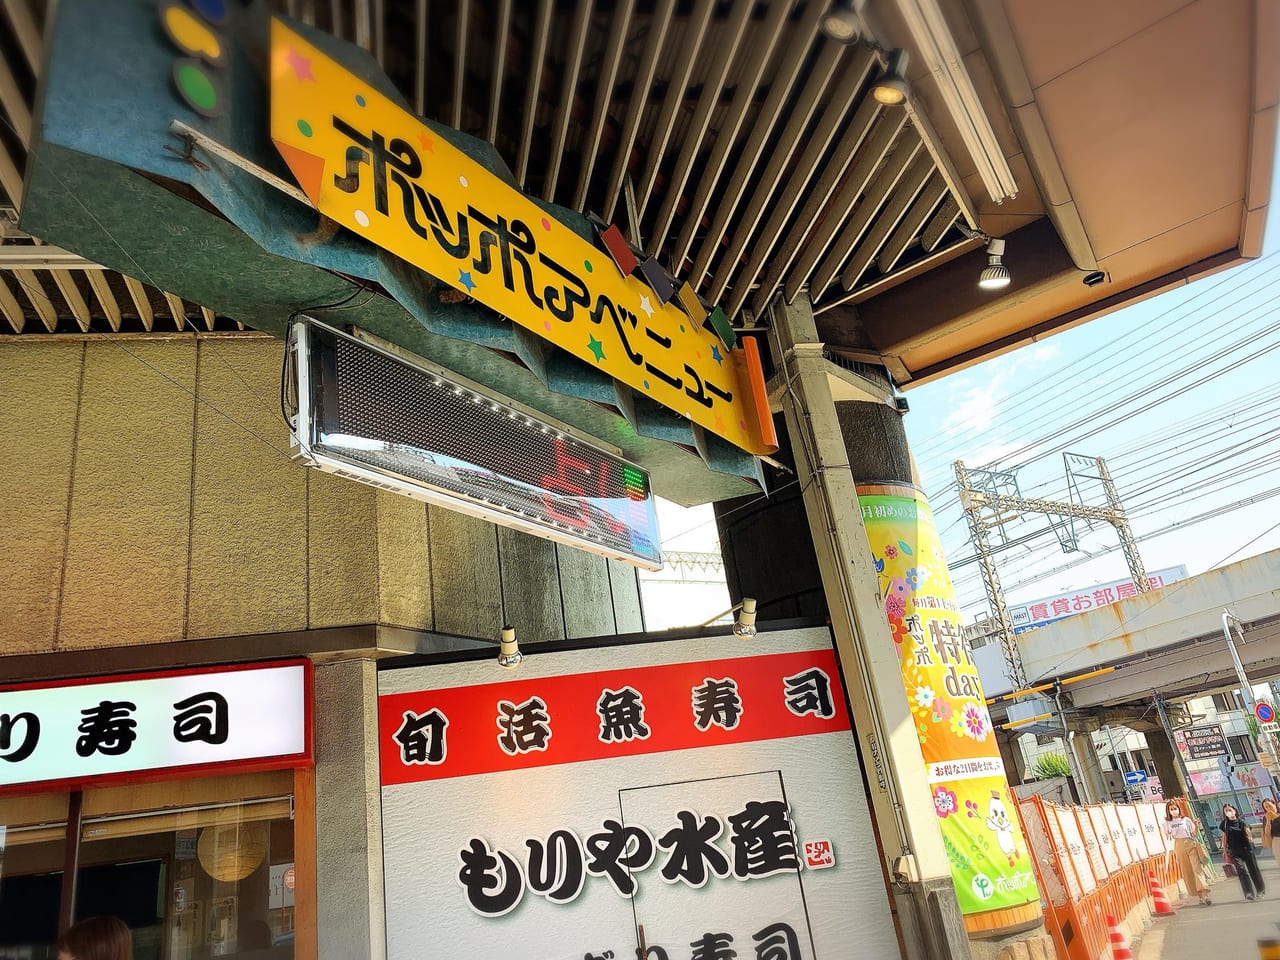 東大阪市 21年1月open予定 布施のパーラーダイエイ跡に 食品スーパー Fresco フレスコ がオープンします 号外net 東大阪市